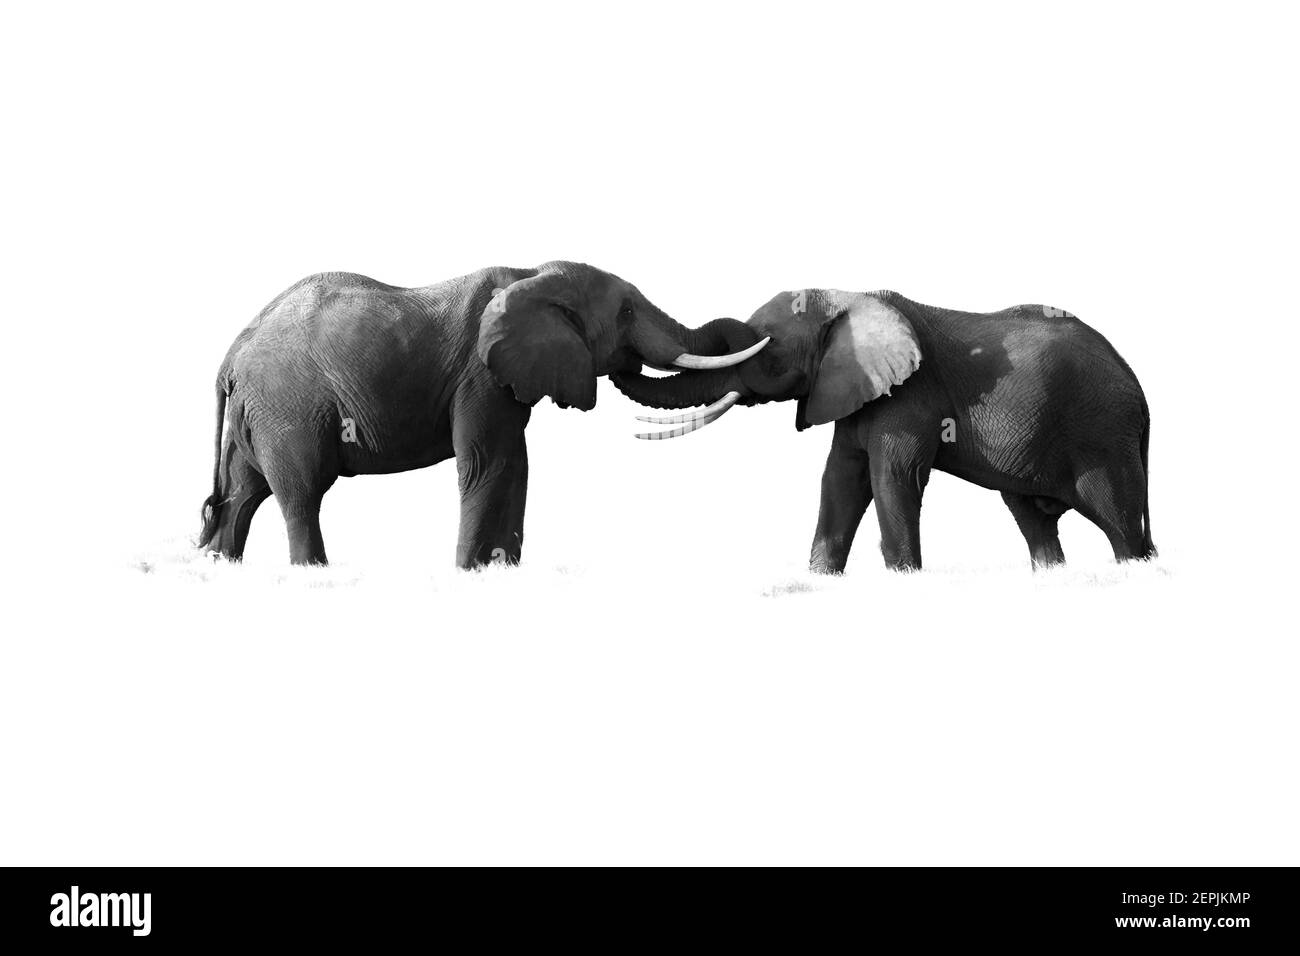 Isolato su sfondo bianco fotografia in bianco e nero di due elefanti africani, Loxodonta africana, affacciati l'uno all'altro, a contatto con tronchi. Safari. Foto Stock